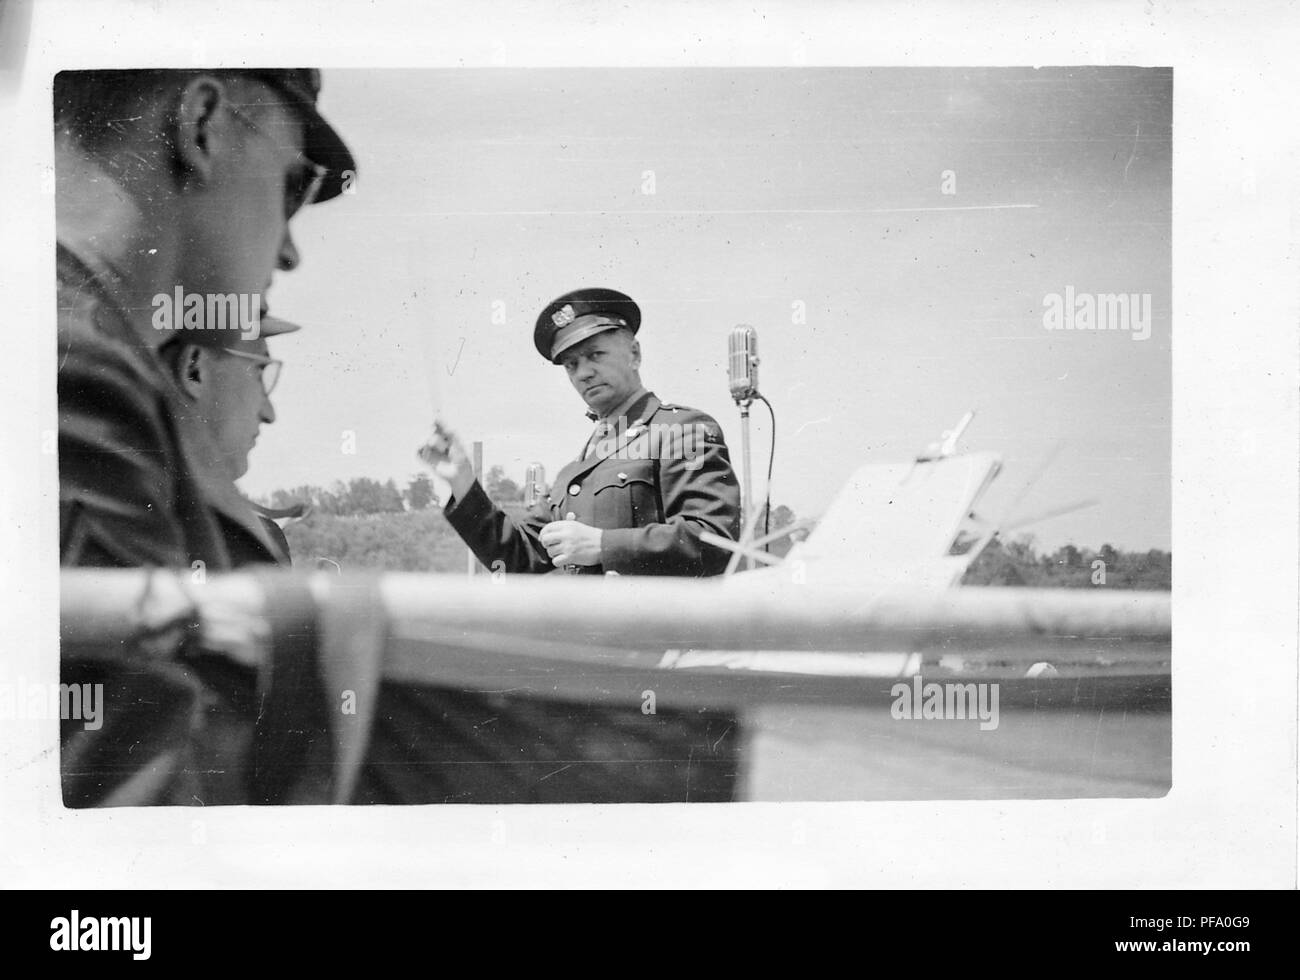 Schwarz-weiß Foto, zeigt ein Dirigent, das Tragen der militärischen Kleidung (mit Flügeln auf seiner Hülse vorschlagen US Air Force Zugehörigkeit) Neben einem Mikrofon, vor zwei Musiker, die auf einem Notenständer suchen, sind wahrscheinlich in Ohio fotografiert, während der Siebten Krieg Darlehen, nahe dem Ende des Zweiten Weltkrieges, 1945. () Stockfoto